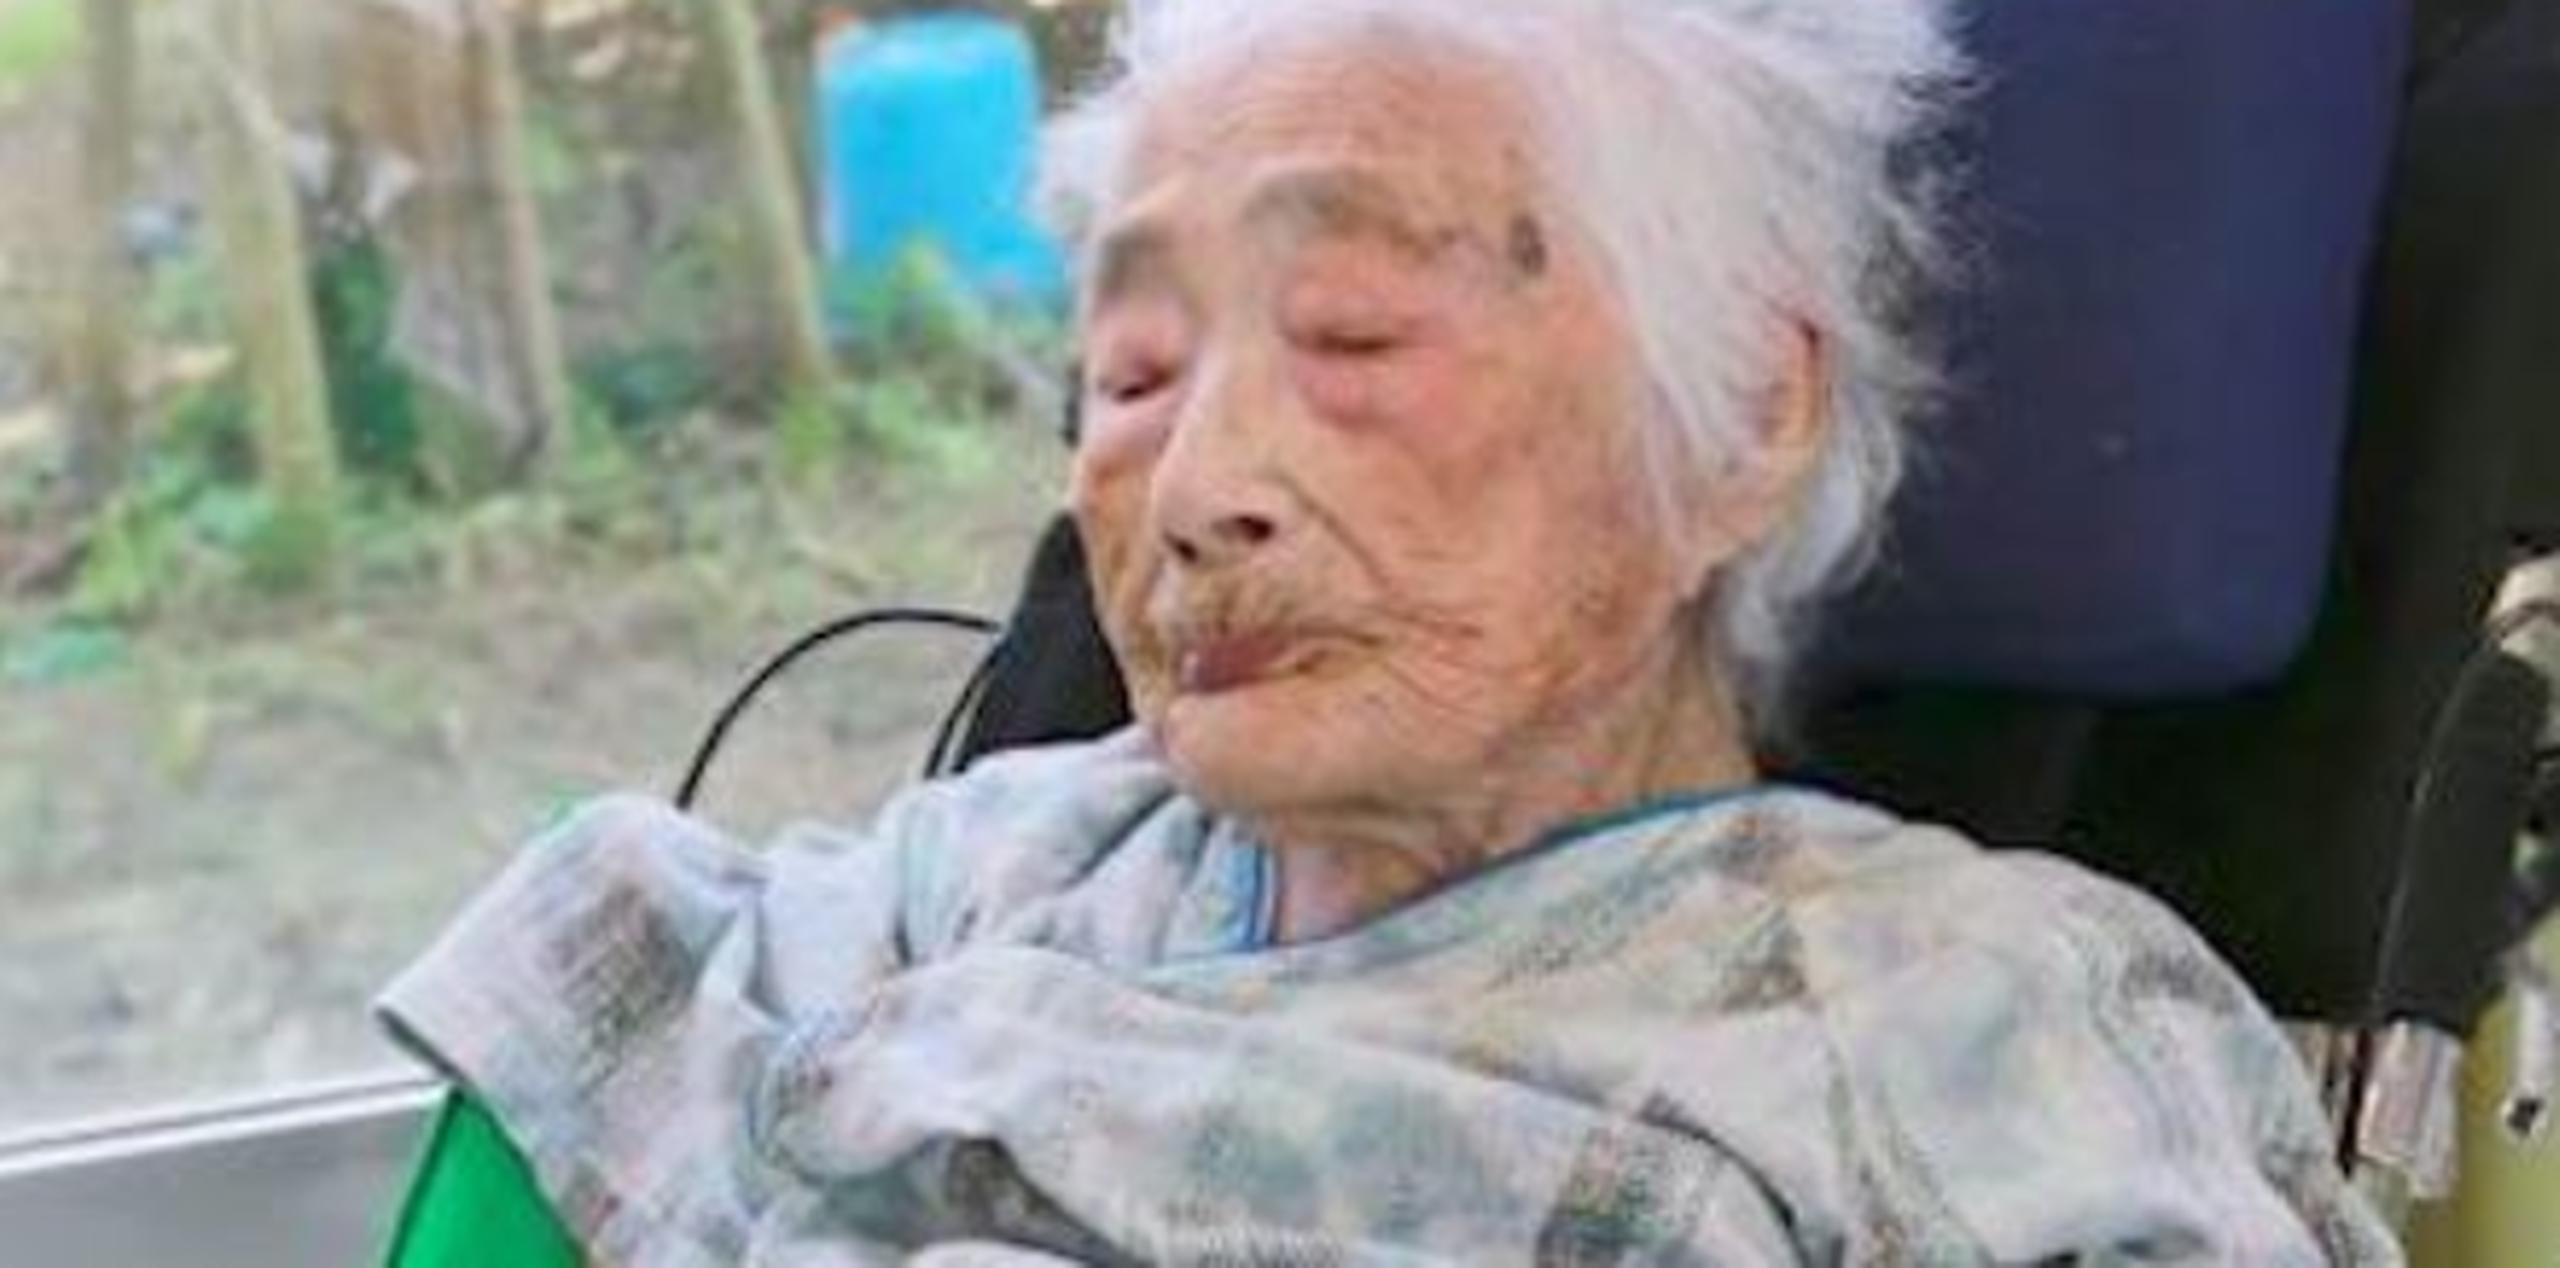 La mujer se convirtió en la persona de mayor edad en el mundo hace siete meses, tras la muerte en septiembre de la jamaiquina Violet Brown, también a los 117 años. (Twitter)